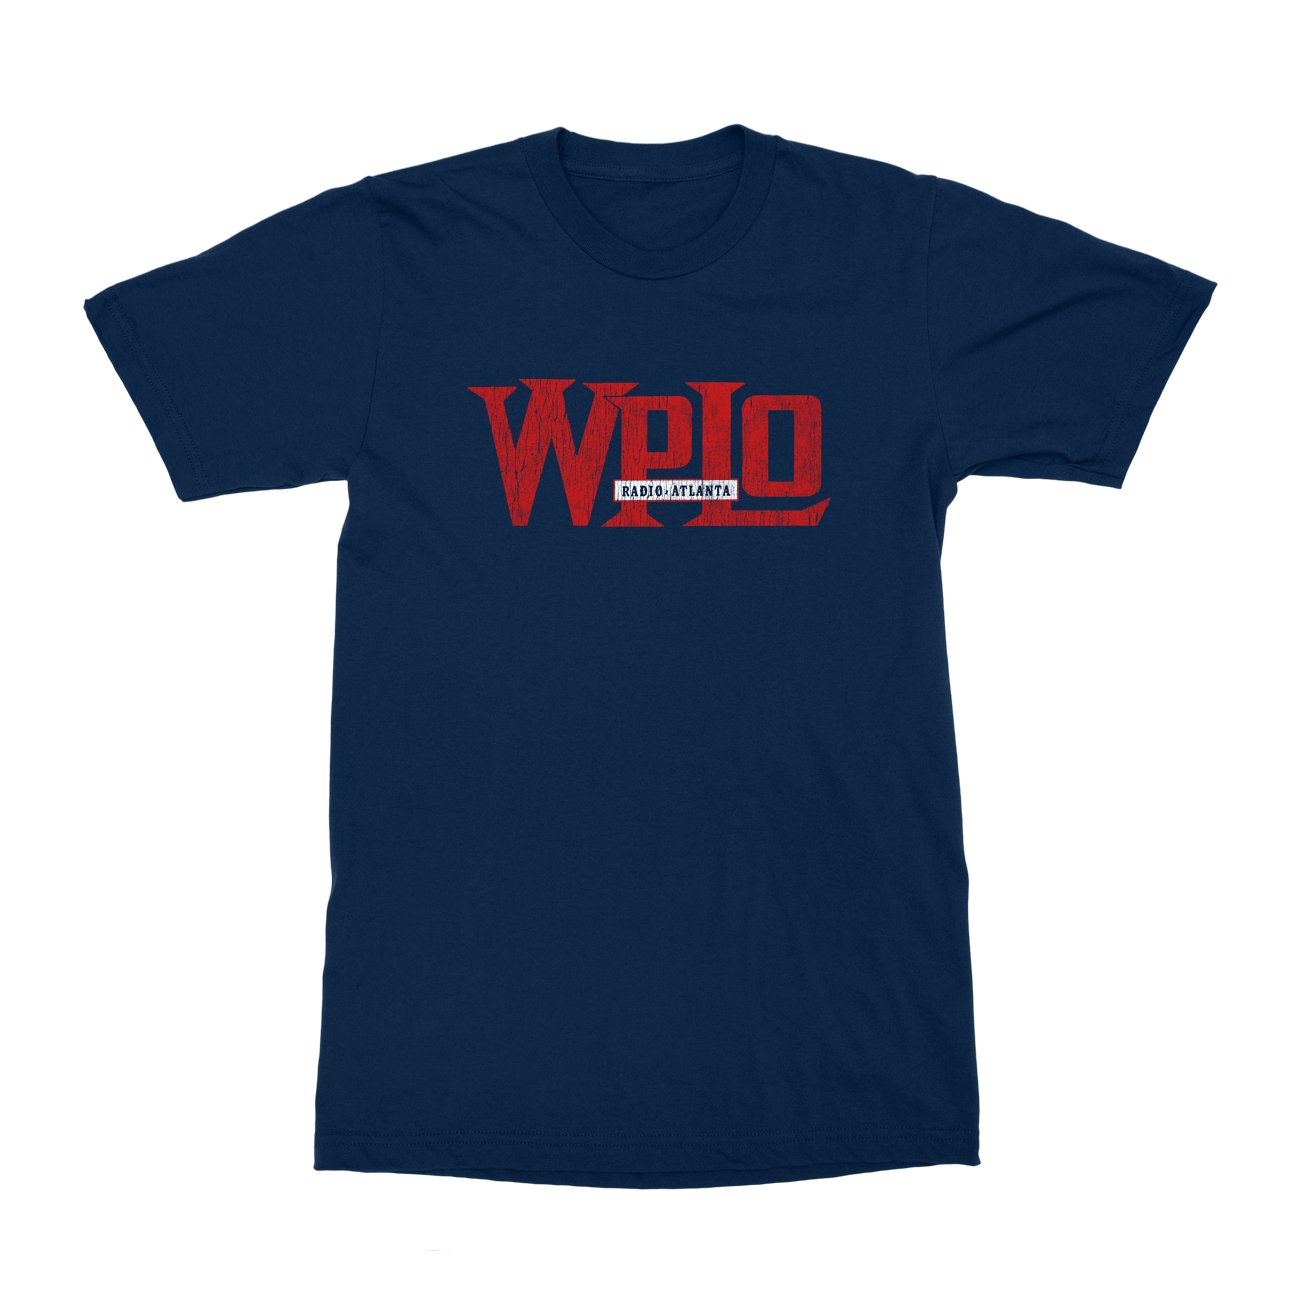 WPLO T-Shirt - Black Cat MFG -